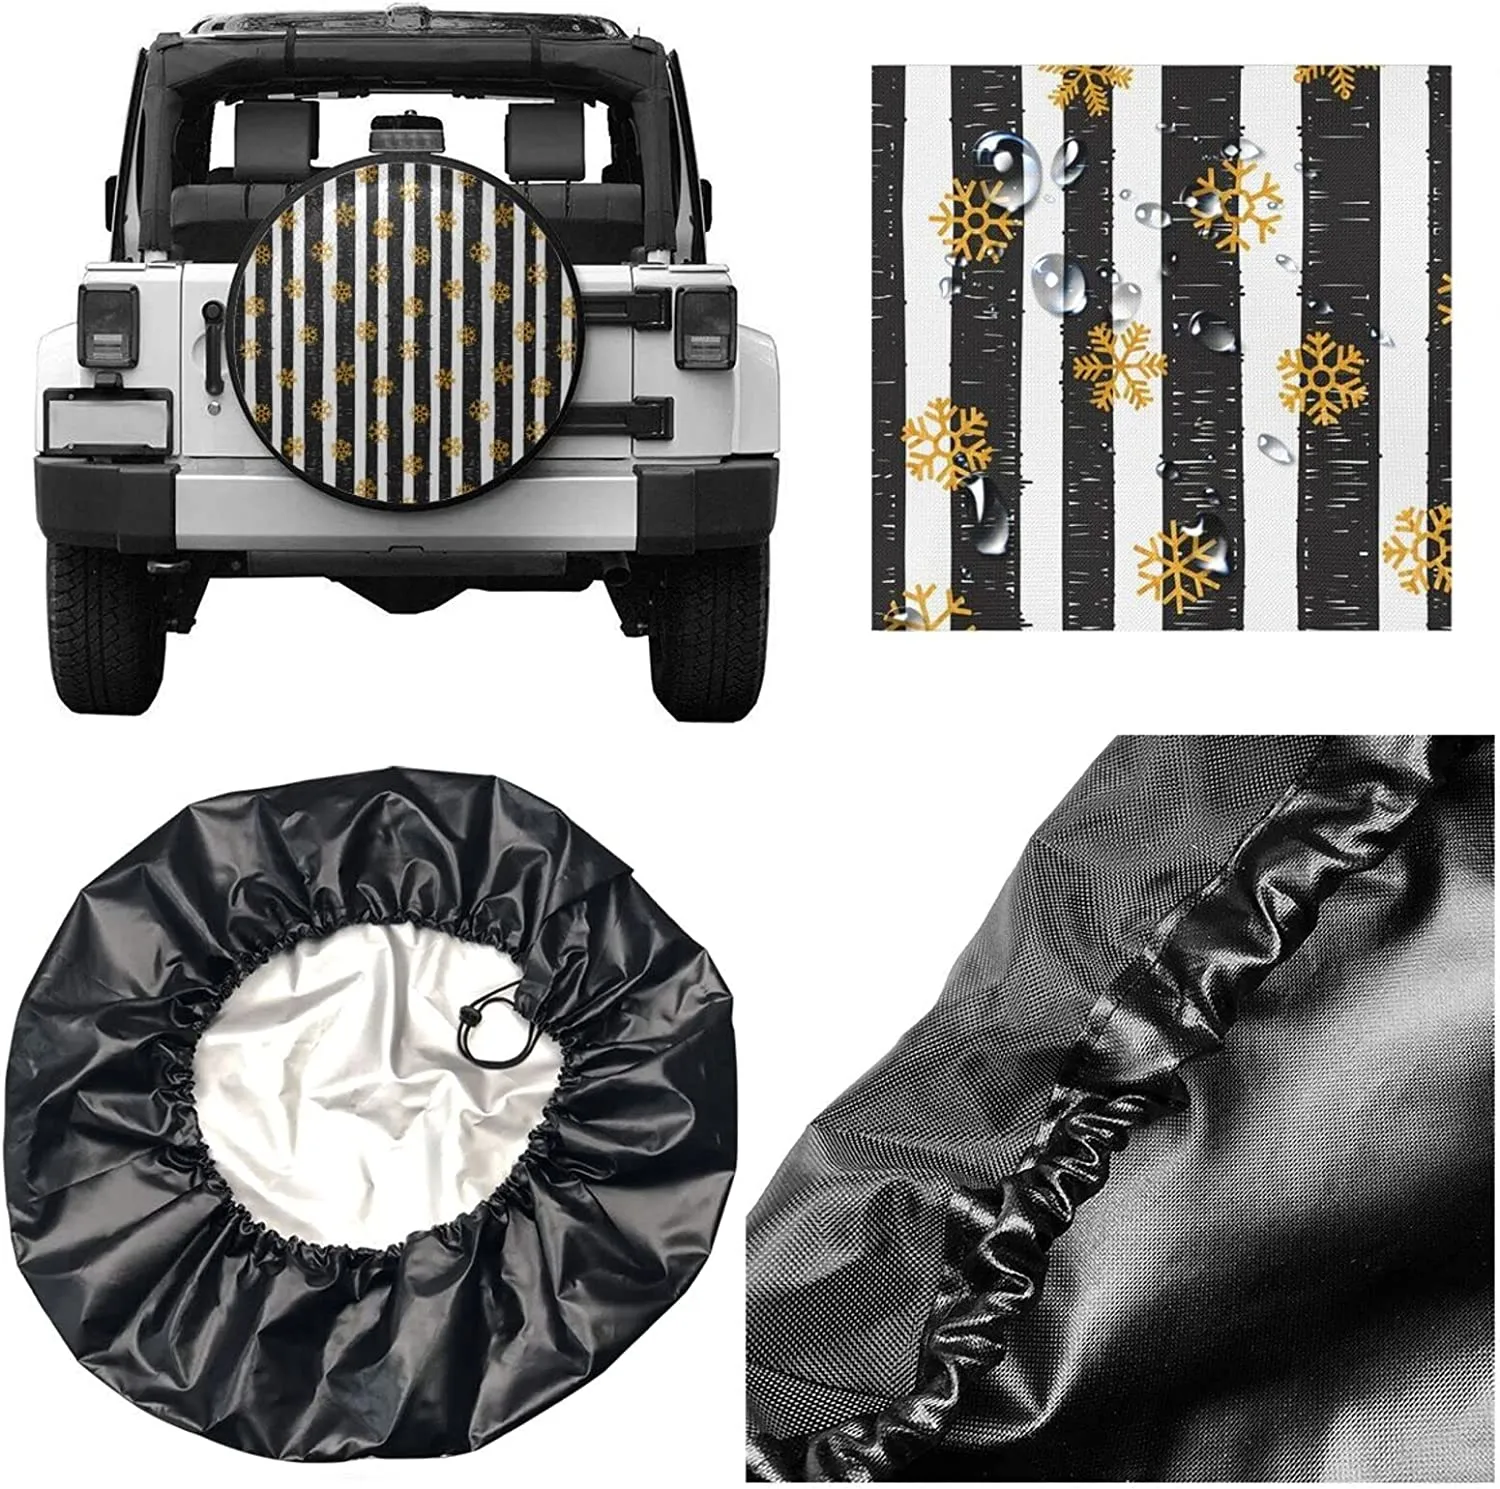 Copertina di ruote ruota di scorta a strisce in bianco e nero Protezioni di ruote a prova di polvere impermeabile universali rimorchio, SUV